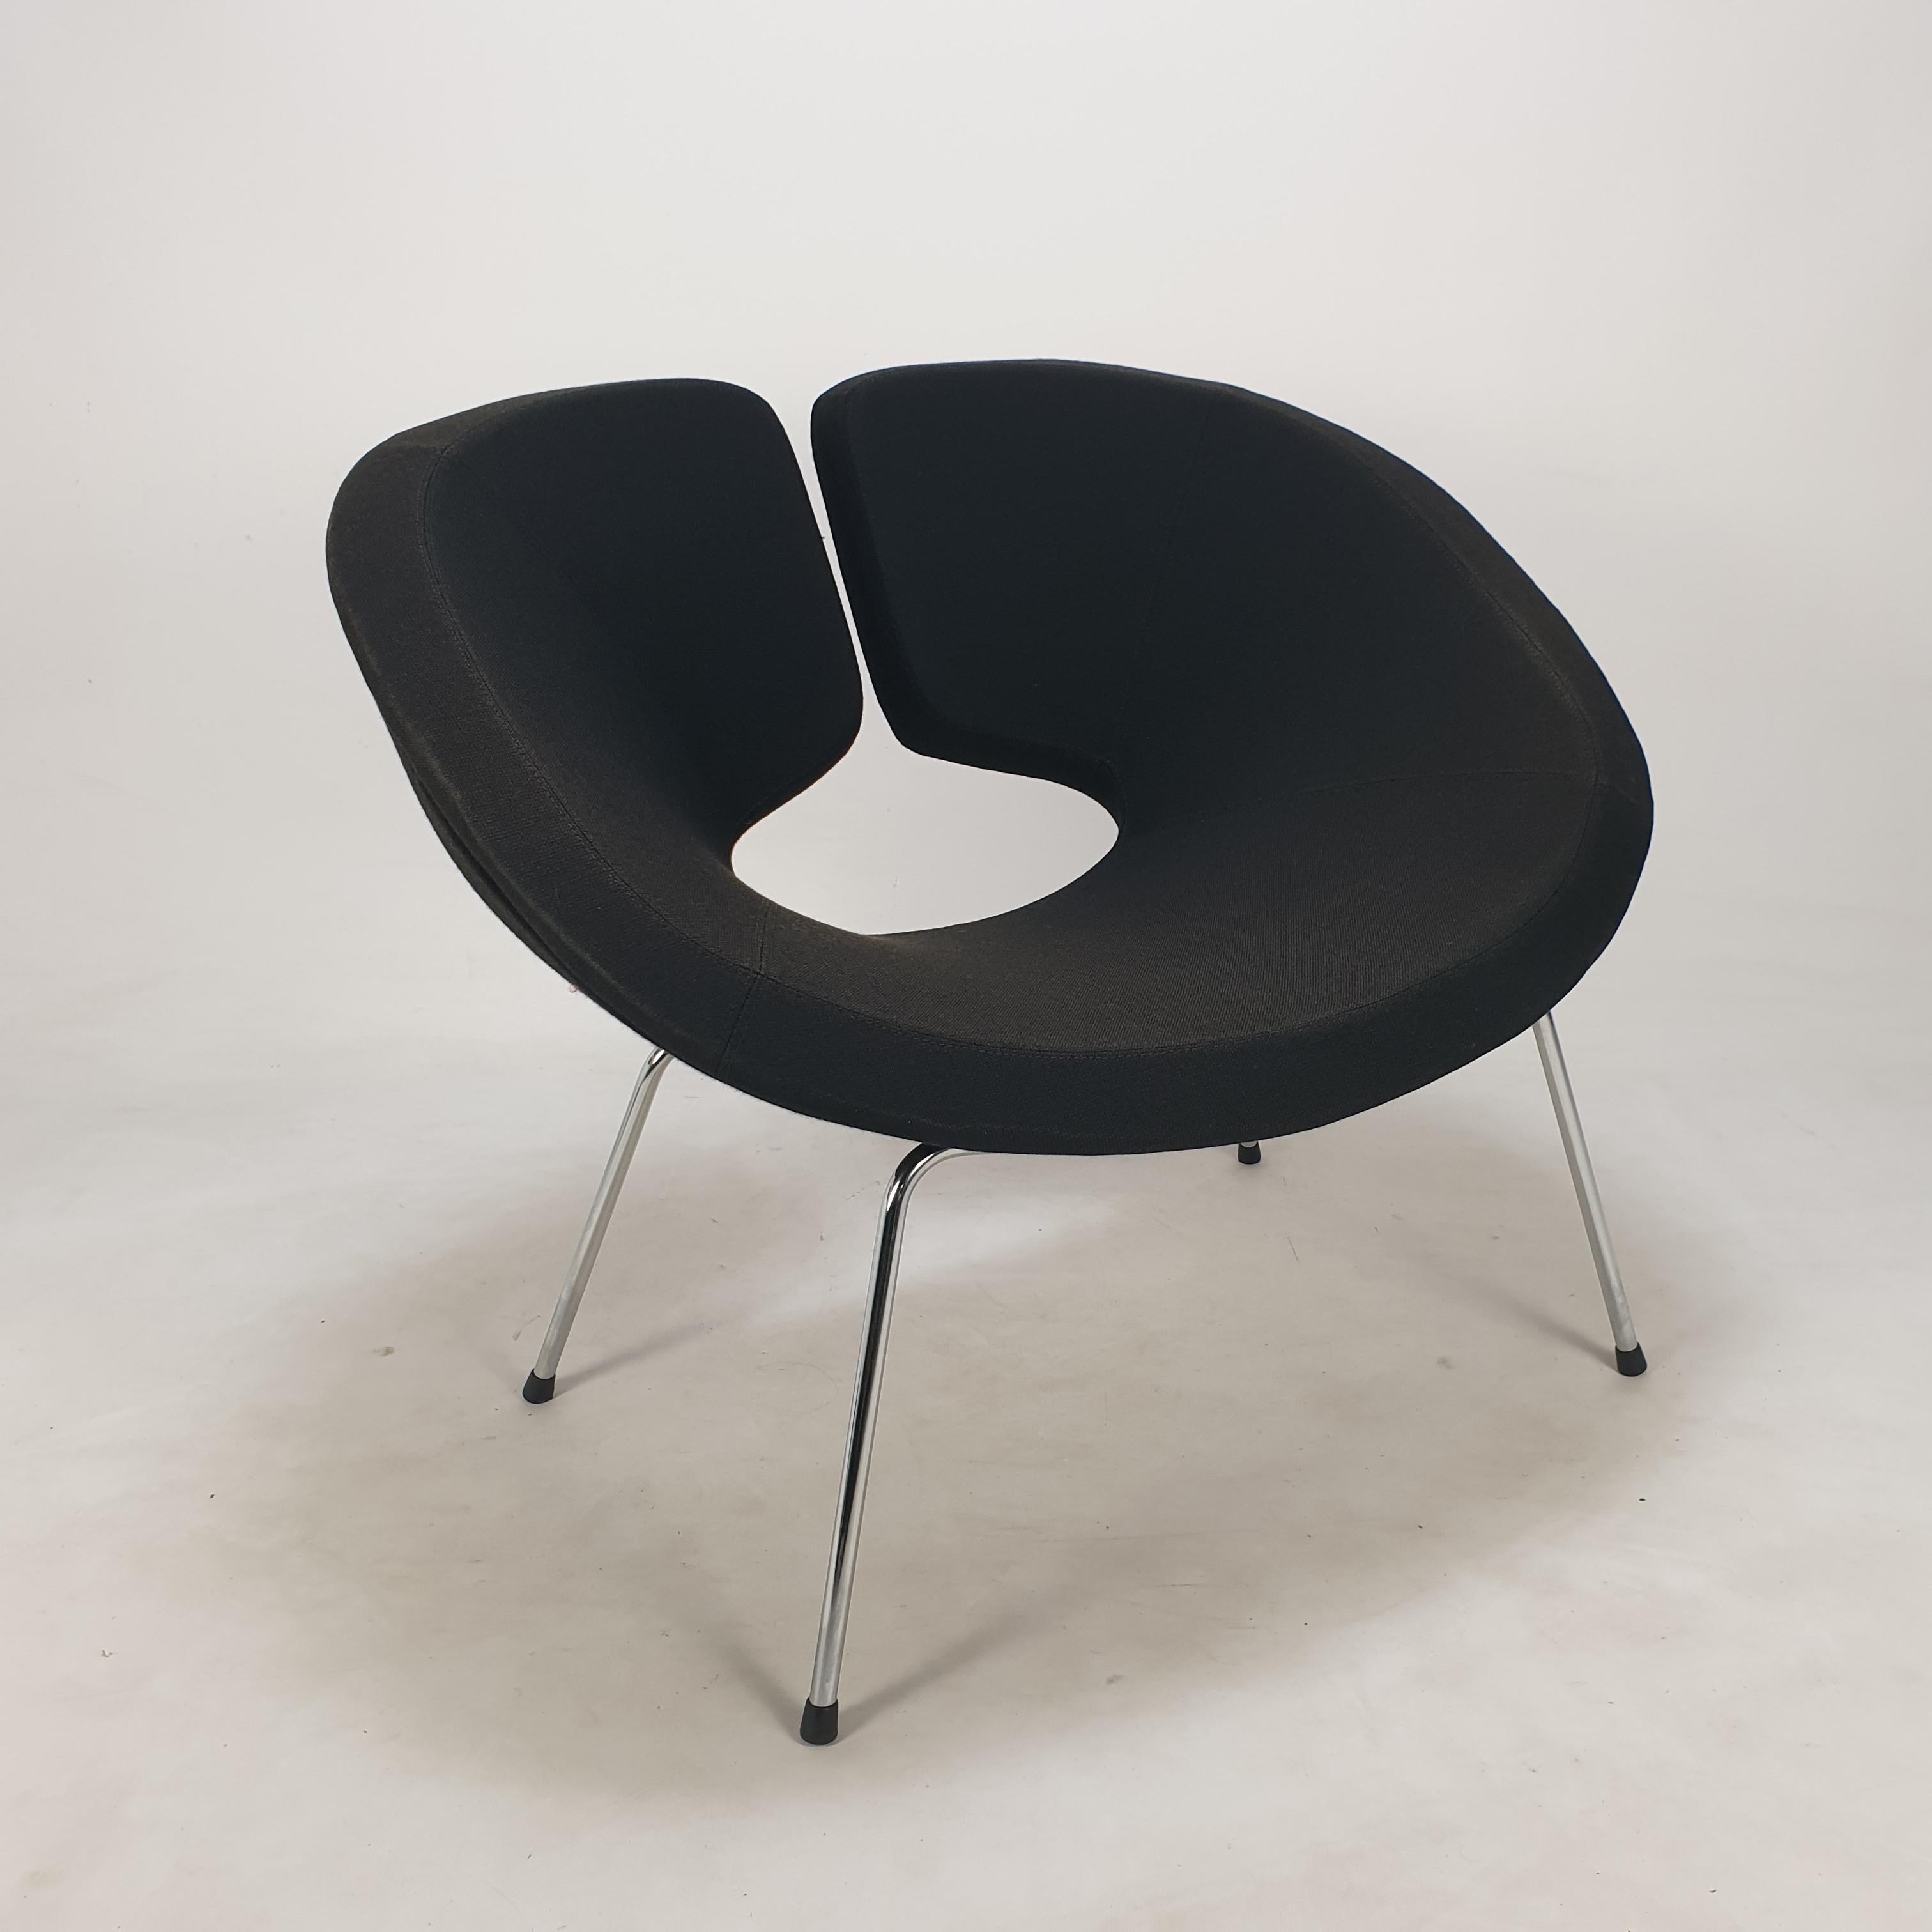 Très belle et confortable chaise Artifort Apollo, conçue par Patrick Norguet en 2002. 

Il est recouvert du tissu original en laine noire Gabriel Fame. 

La chaise est utilisée, mais en très bon état.